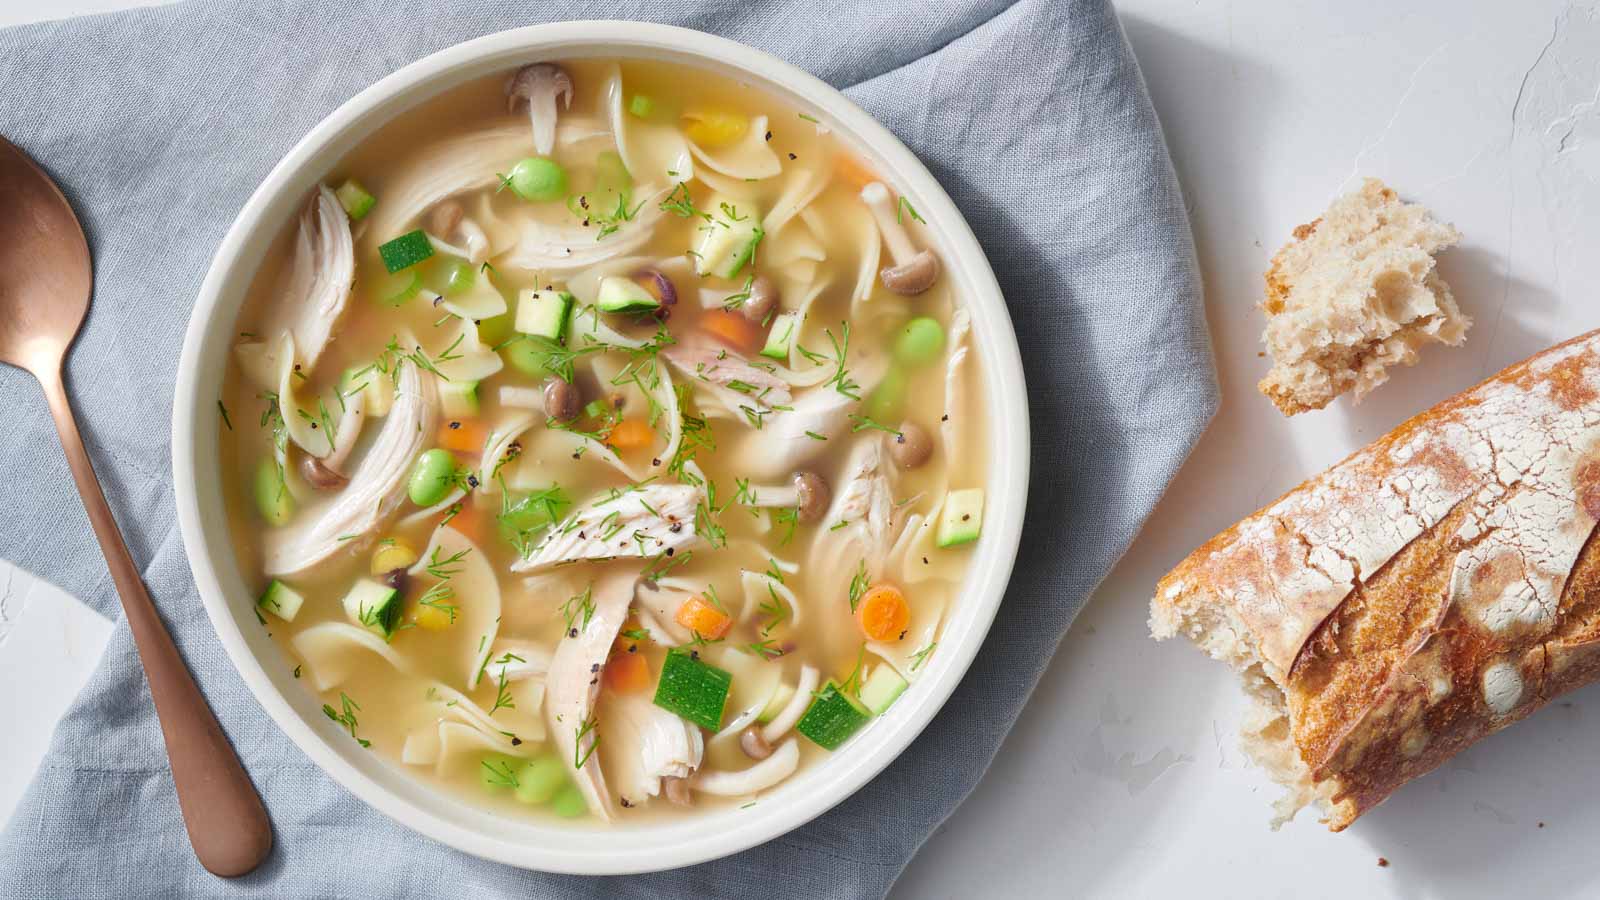 Συνταγή για την πιο εύκολη και θρεπτική κοτόσουπα!